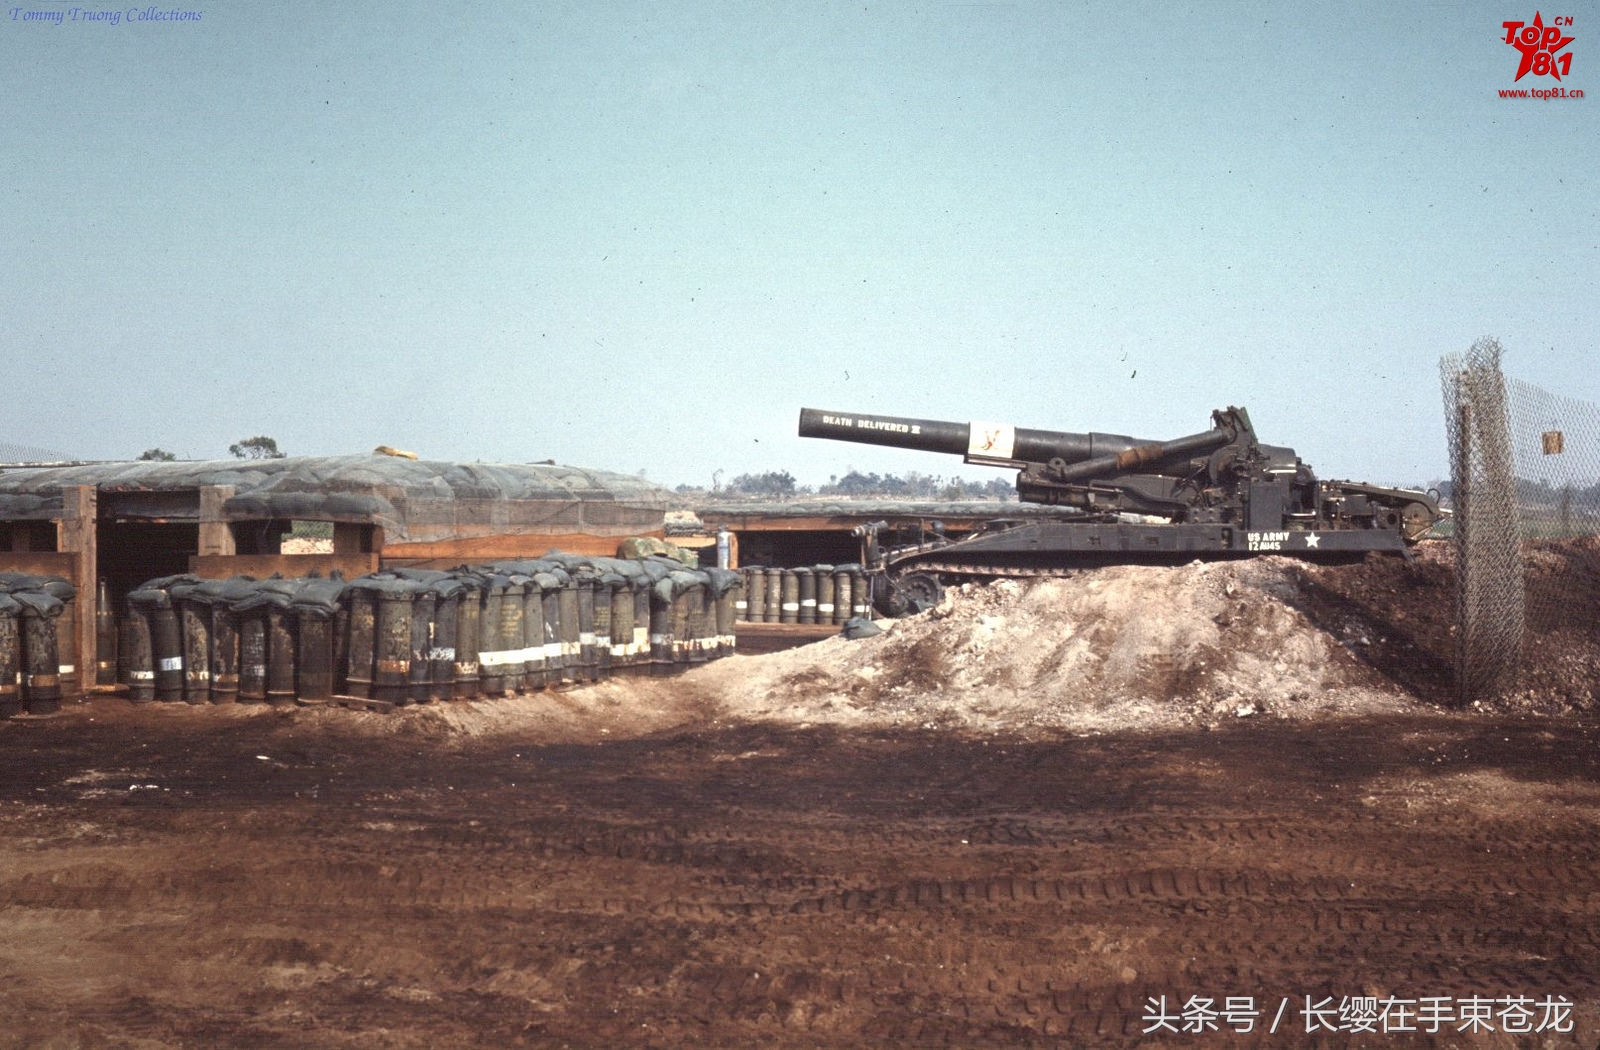 美军口径最大的榴弹炮,被称为一只大棒